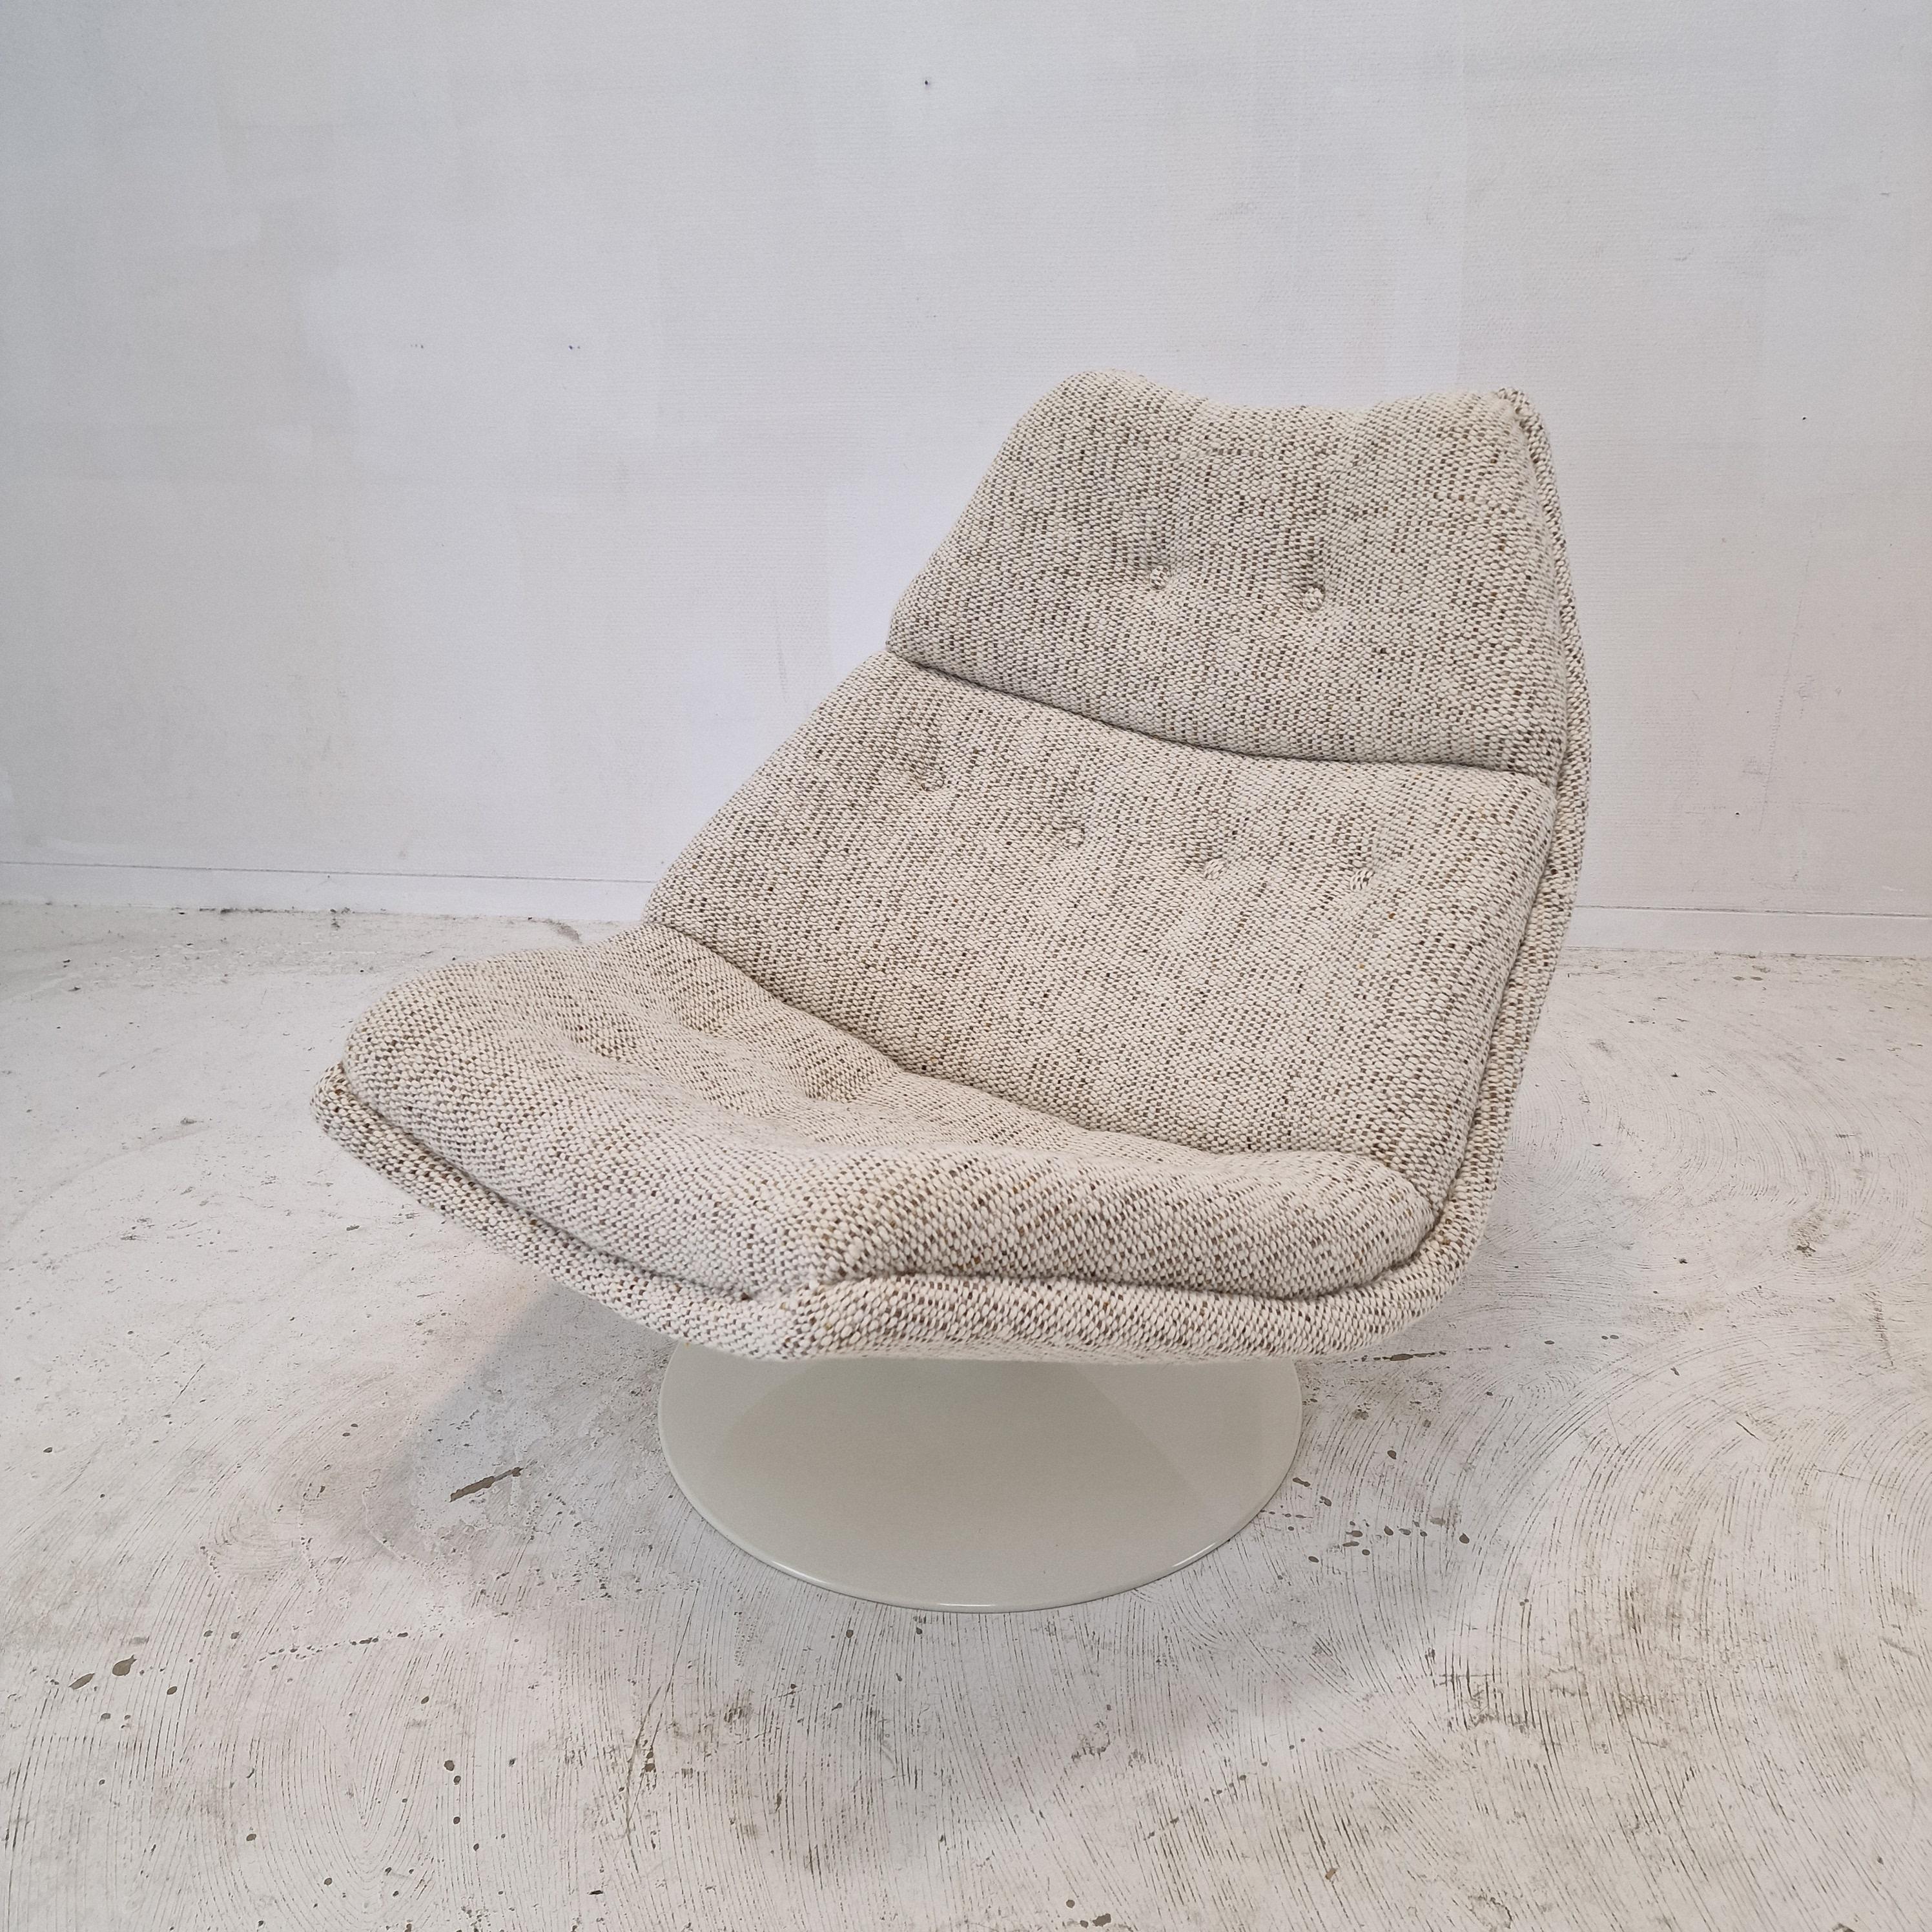 Sehr bequemer Artifort Sessel Modell F511. 
Entworfen von dem berühmten englischen Designer Geoffrey Harcourt in den 60er Jahren. 

Der Stuhl wurde gerade mit neuem Stoff und neuem Schaumstoff restauriert.
Er ist mit einem wunderschönen und